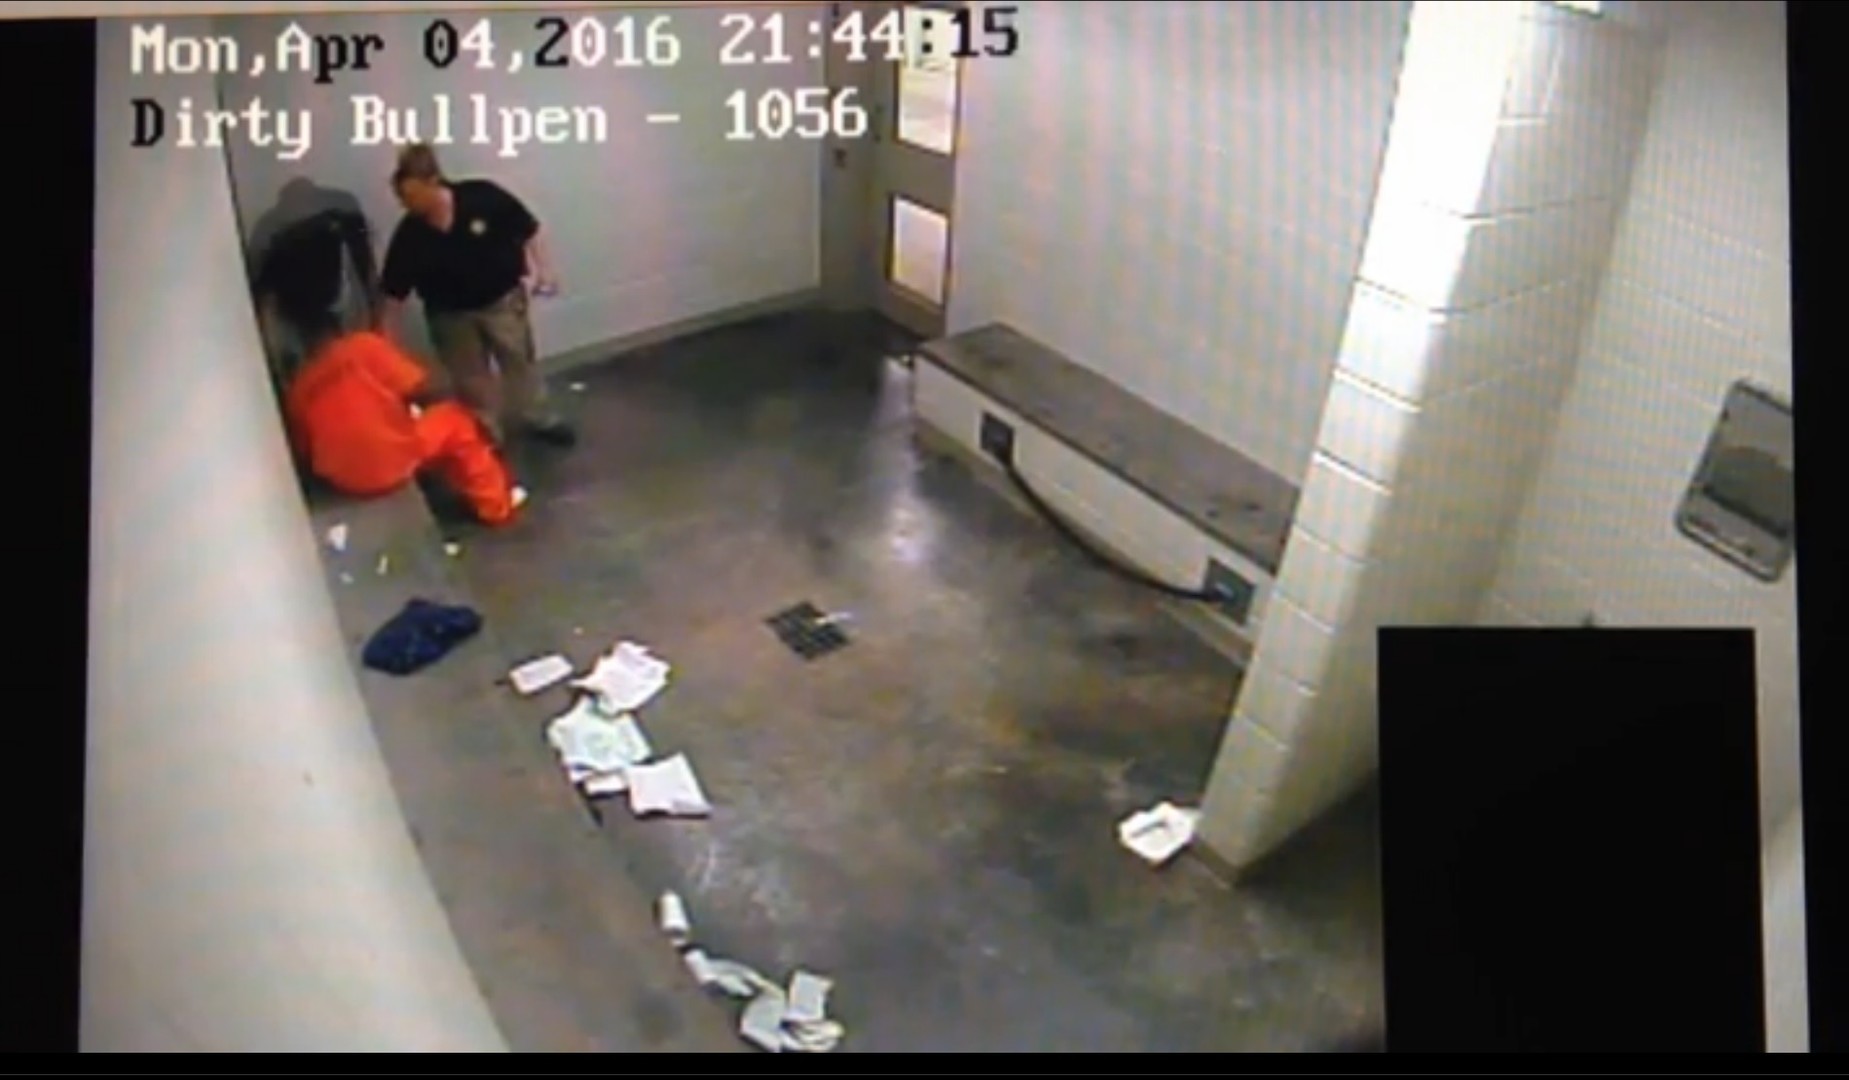 Etats-Unis : une vidéo choquante montre un gardien de prison tuant un détenu noir par strangulation